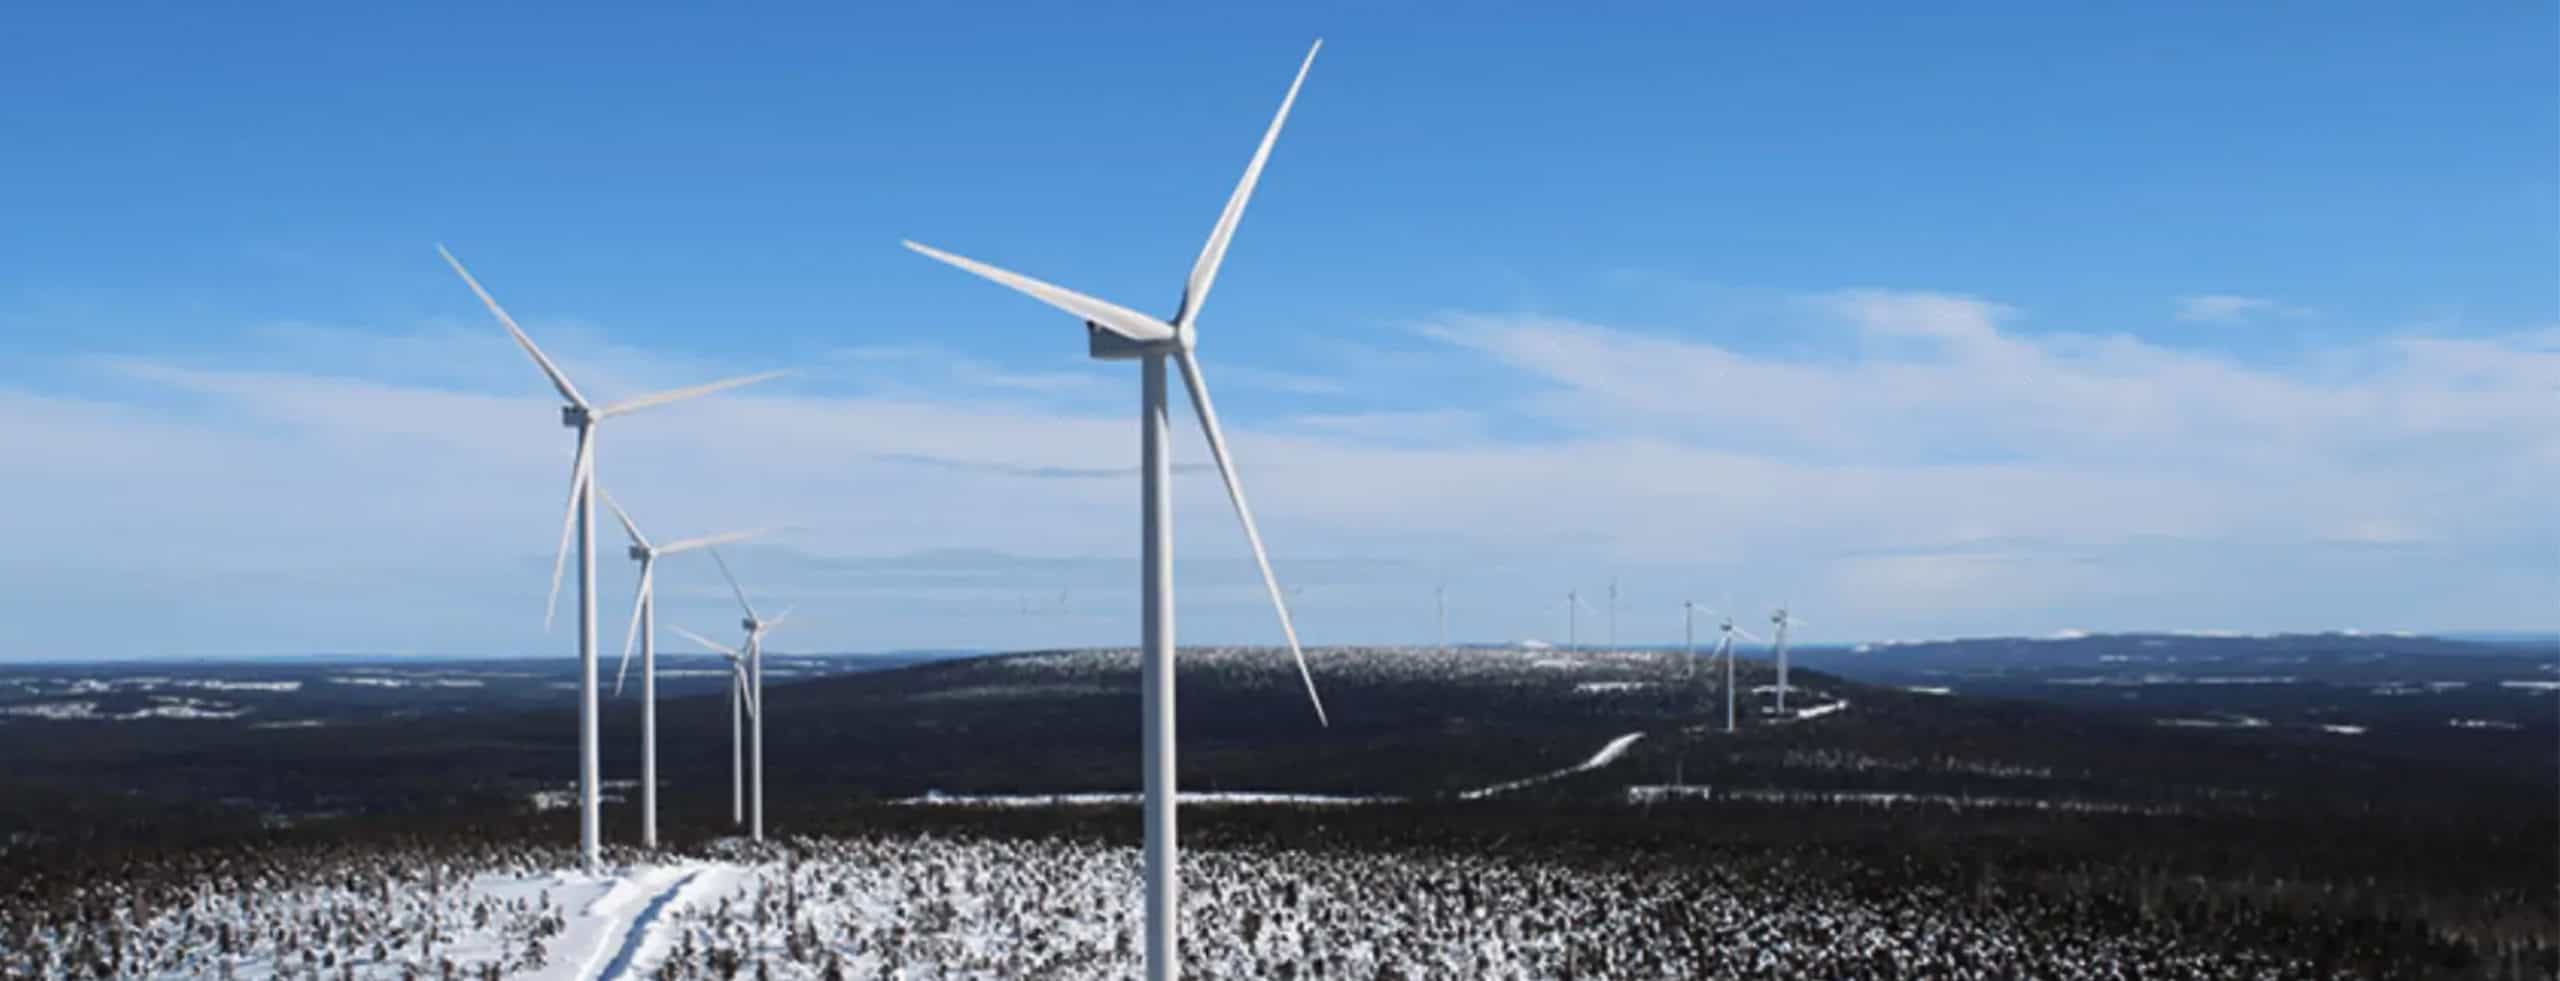 Tuulivoimalla katettiin 10 % Suomen sähkönkulutuksesta vuonna 2020 - Pohjan  Voima